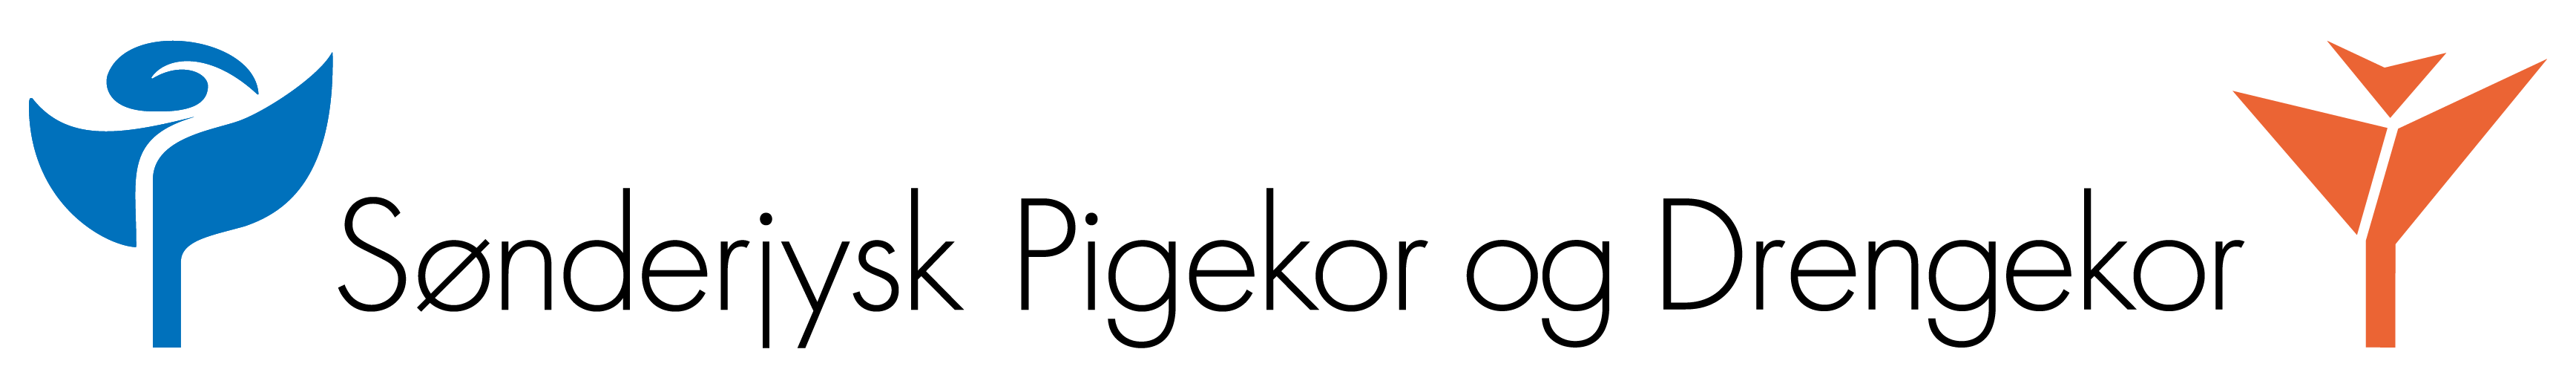 Sønderjysk Pigekor og Drengekor Logo